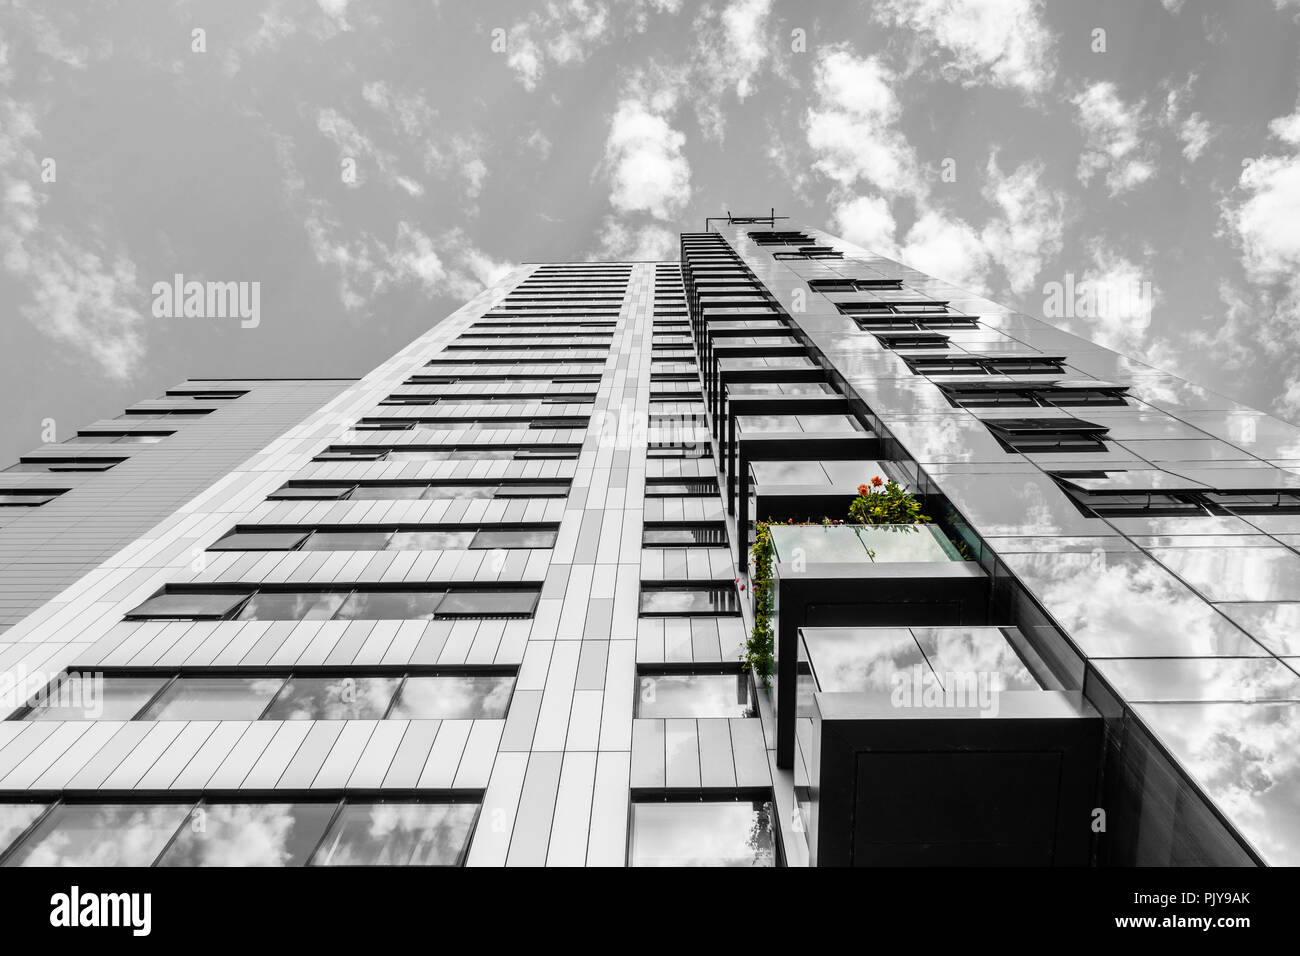 Abstraite de l'MoresbyTower - a 24 étages bâtiment résidentiel offrant un hébergement de luxe à Southampton, Hampshire, England, UK Banque D'Images